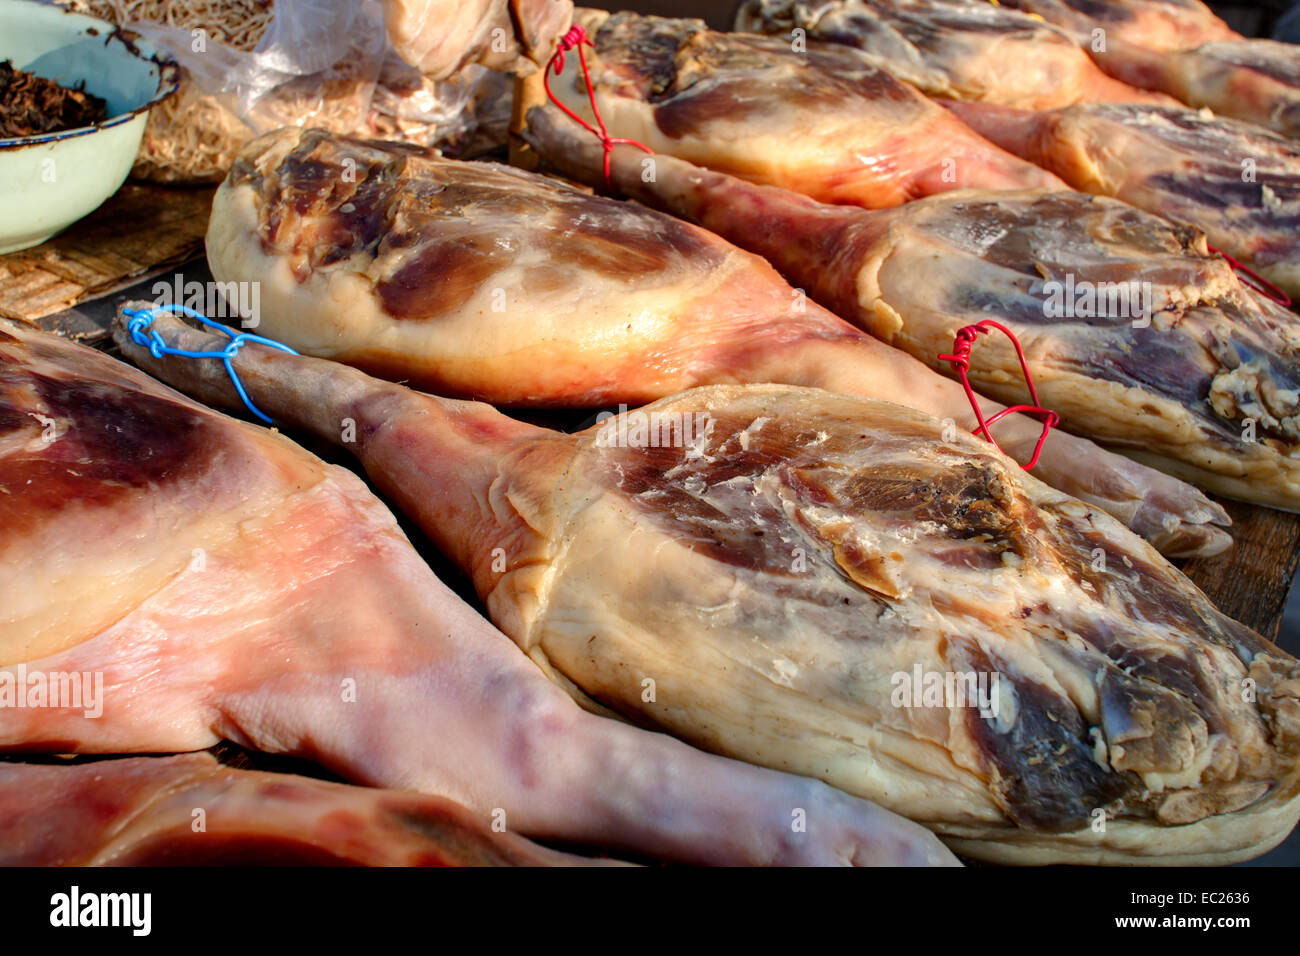 Menschen machen Wurst, Fleisch getrocknet und ausgehärtet, um lange Zeit im südlichen Teil von China zu halten. Stockfoto